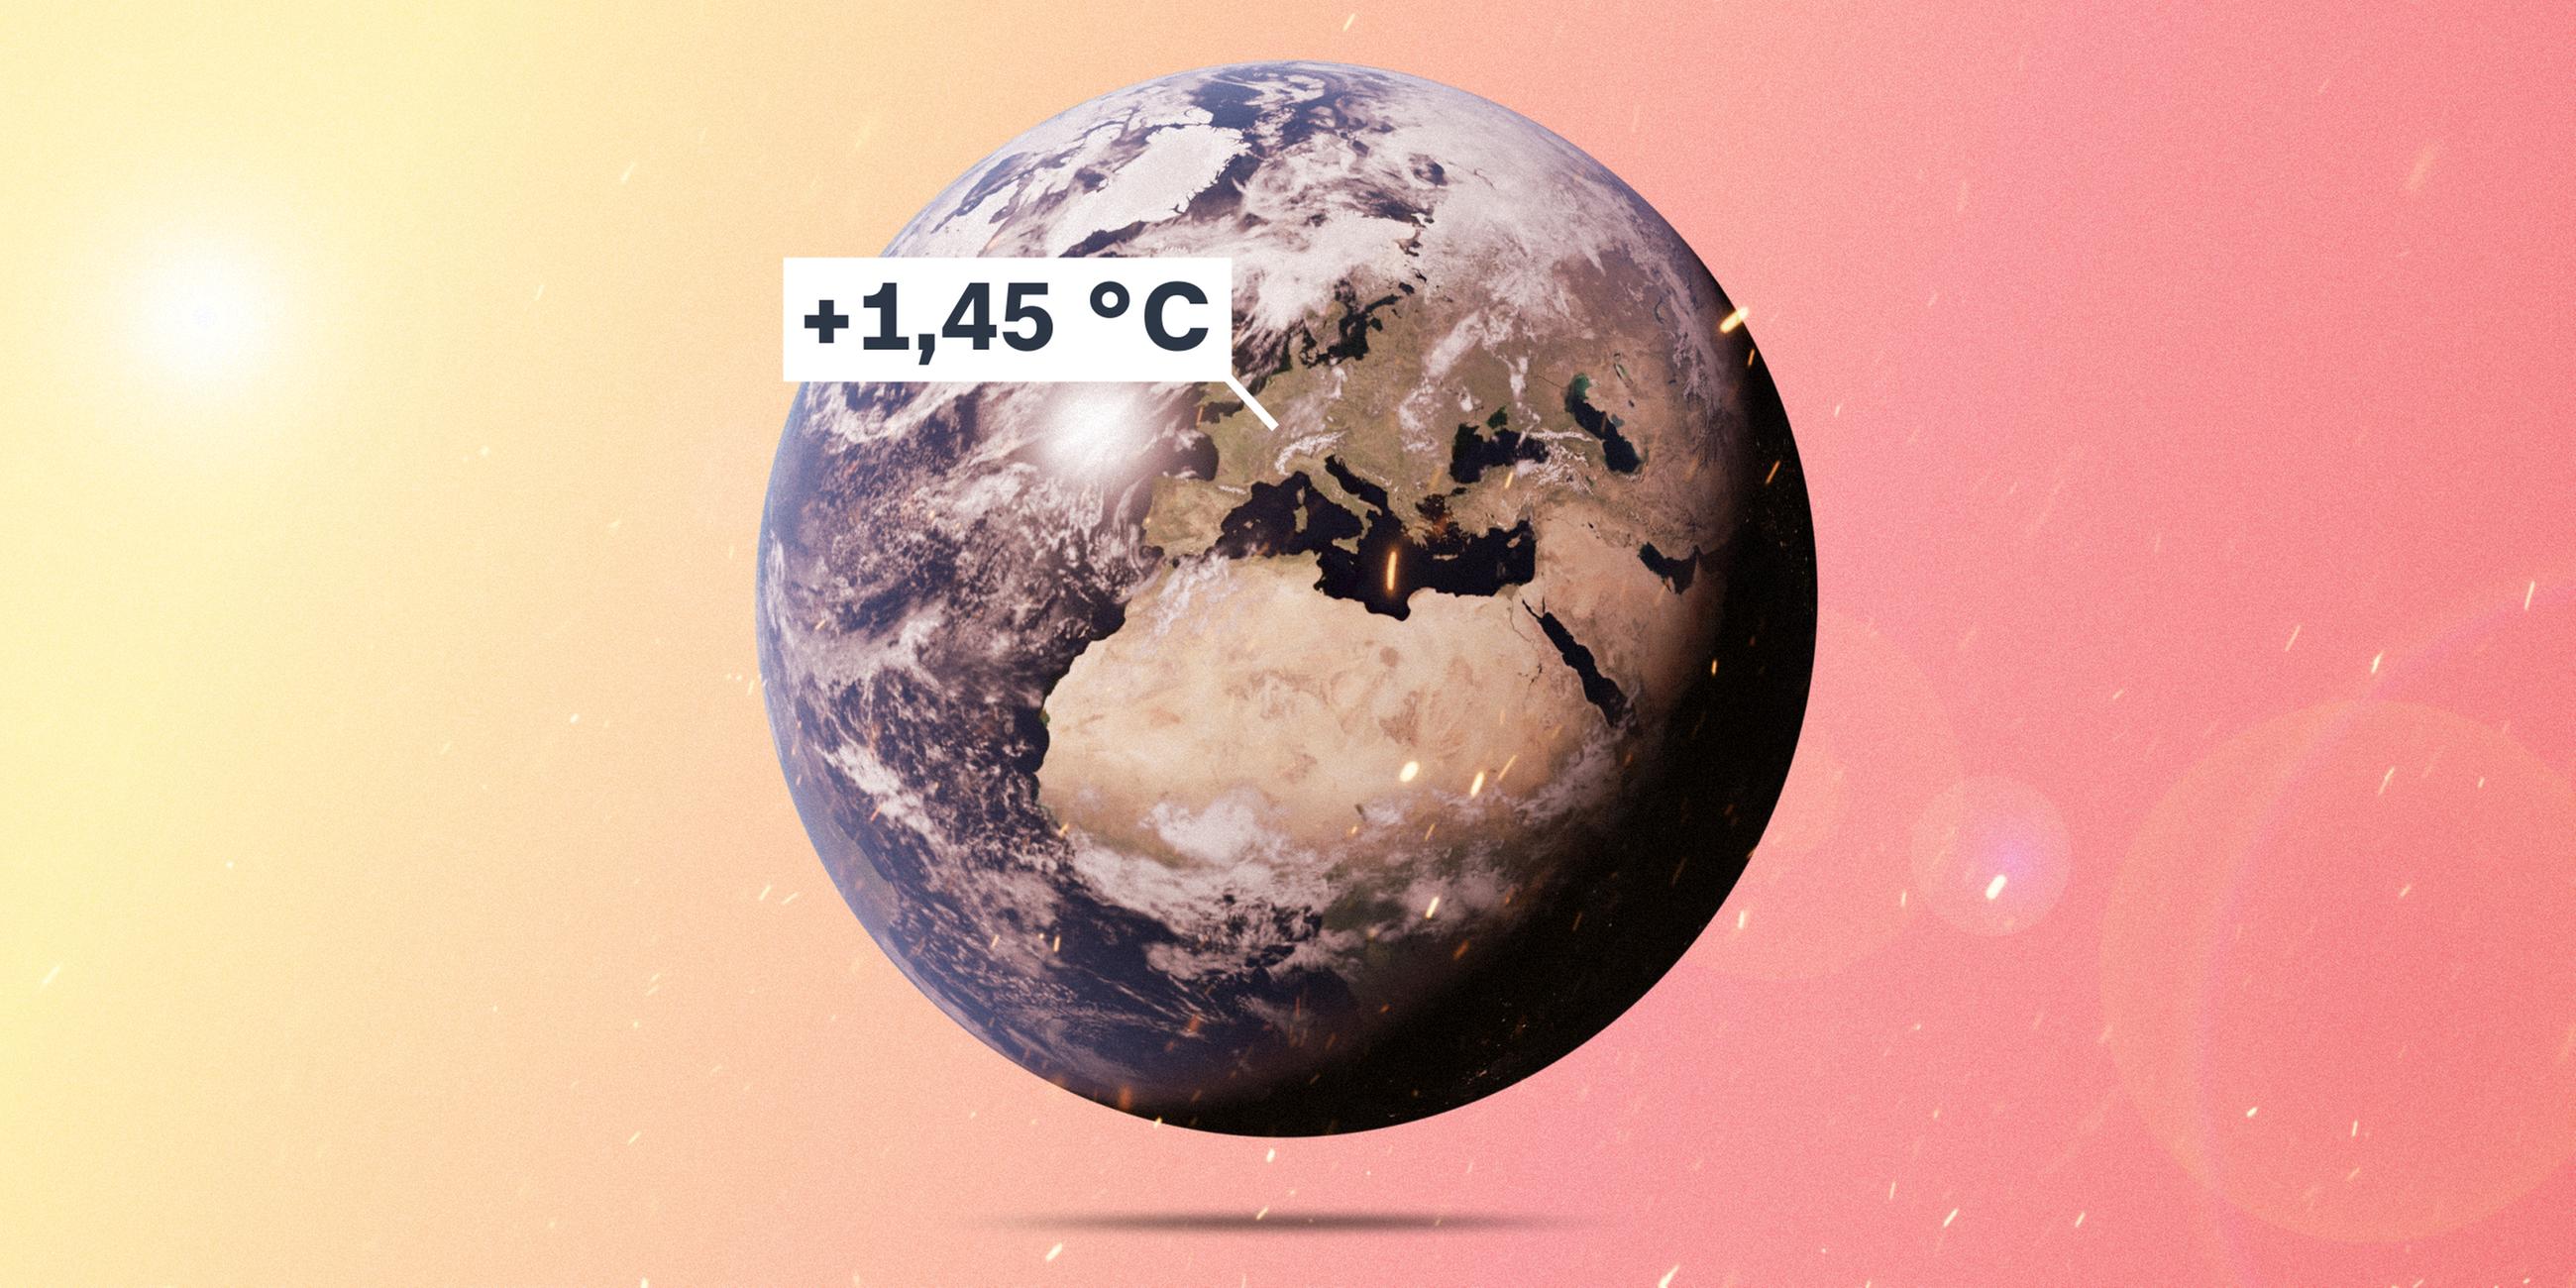 Das Bild zeigt unseren Planeten. Europa als Kontinent ist klar zu erkennen - dazu das Label, dass es auf dem Kontinent im Schnitt um 1,45 Grad Celsius wärmer ist als noch vor 30 Jahren.